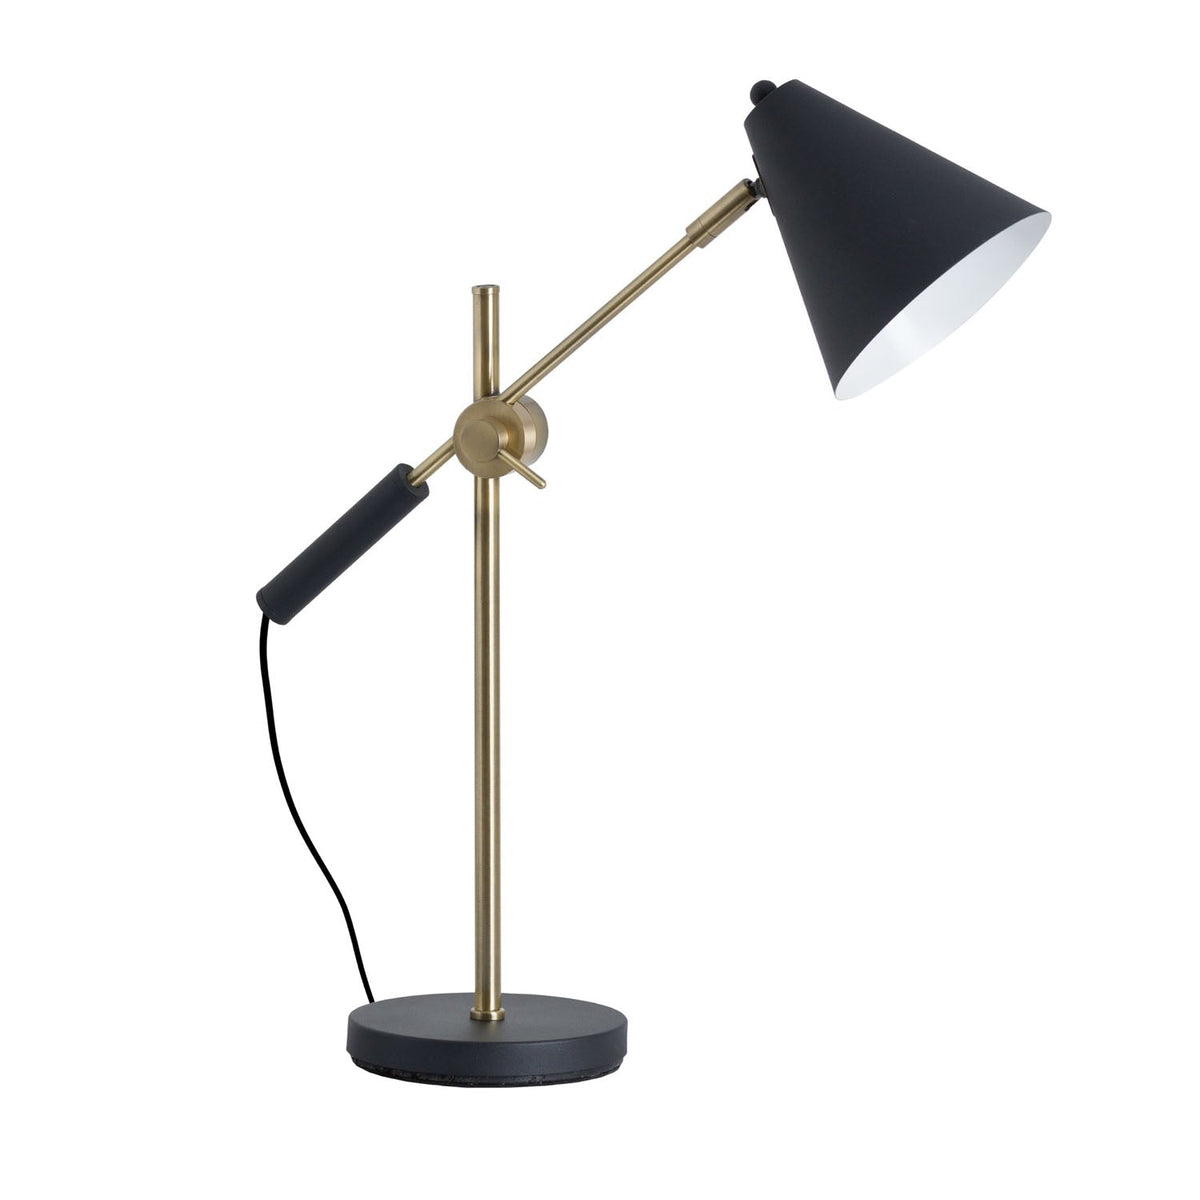 Adjustable Desk Lamp - Black & Brass